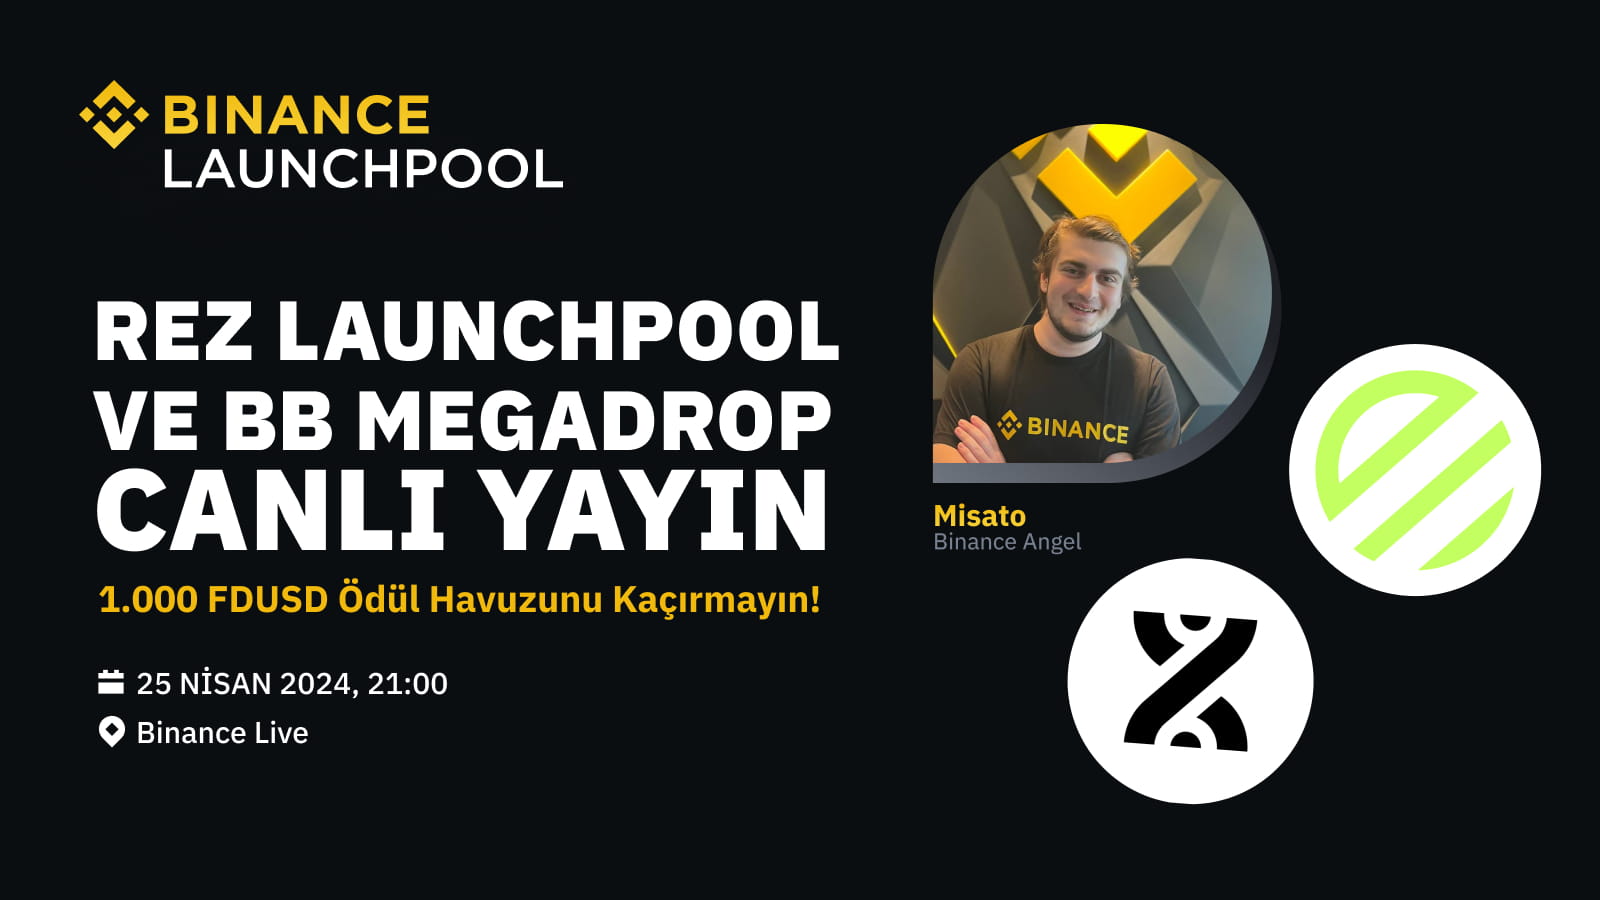 REZ Launchpool ve BB Megadrop Yayınına Katılın, Ödül Kazanın!